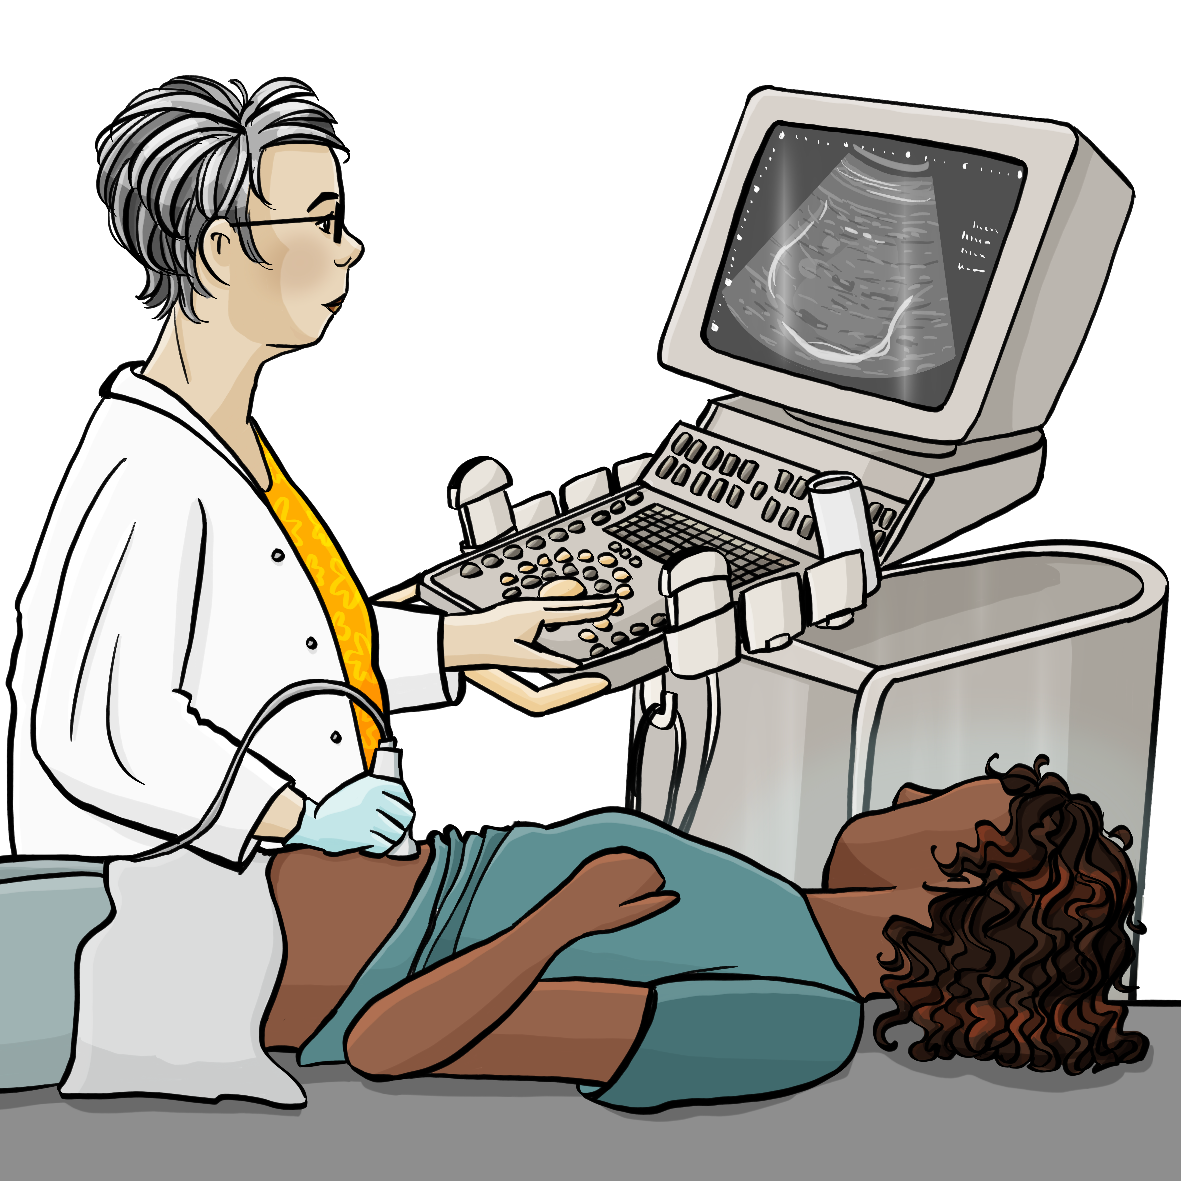 Eine Ärztin hält den Schallkopf von einem Ultraschallgerät auf den Bauch von einer Frau. Mit der anderen Hand drückt sie Knöpfe vom Ultraschallgerät. Beide schauen auf den Bildschirm.